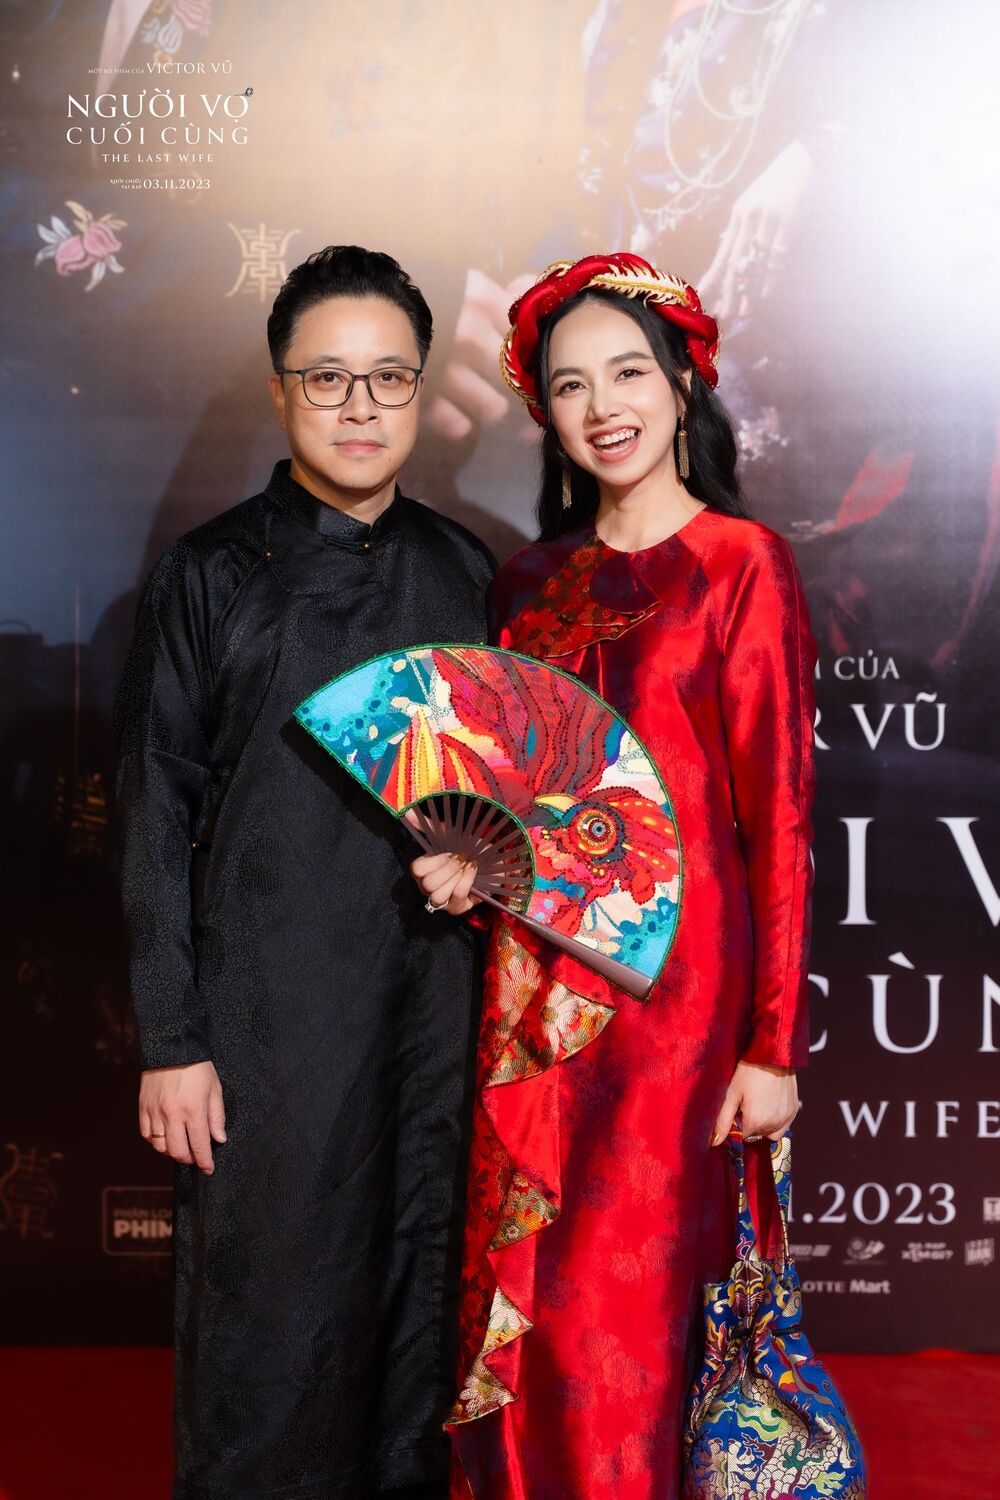 Hoa hậu Thùy Tiên khoe vai trần, Thanh Sơn - Khả Ngân sánh đôi trên thảm đỏ "Người vợ cuối cùng" - 1